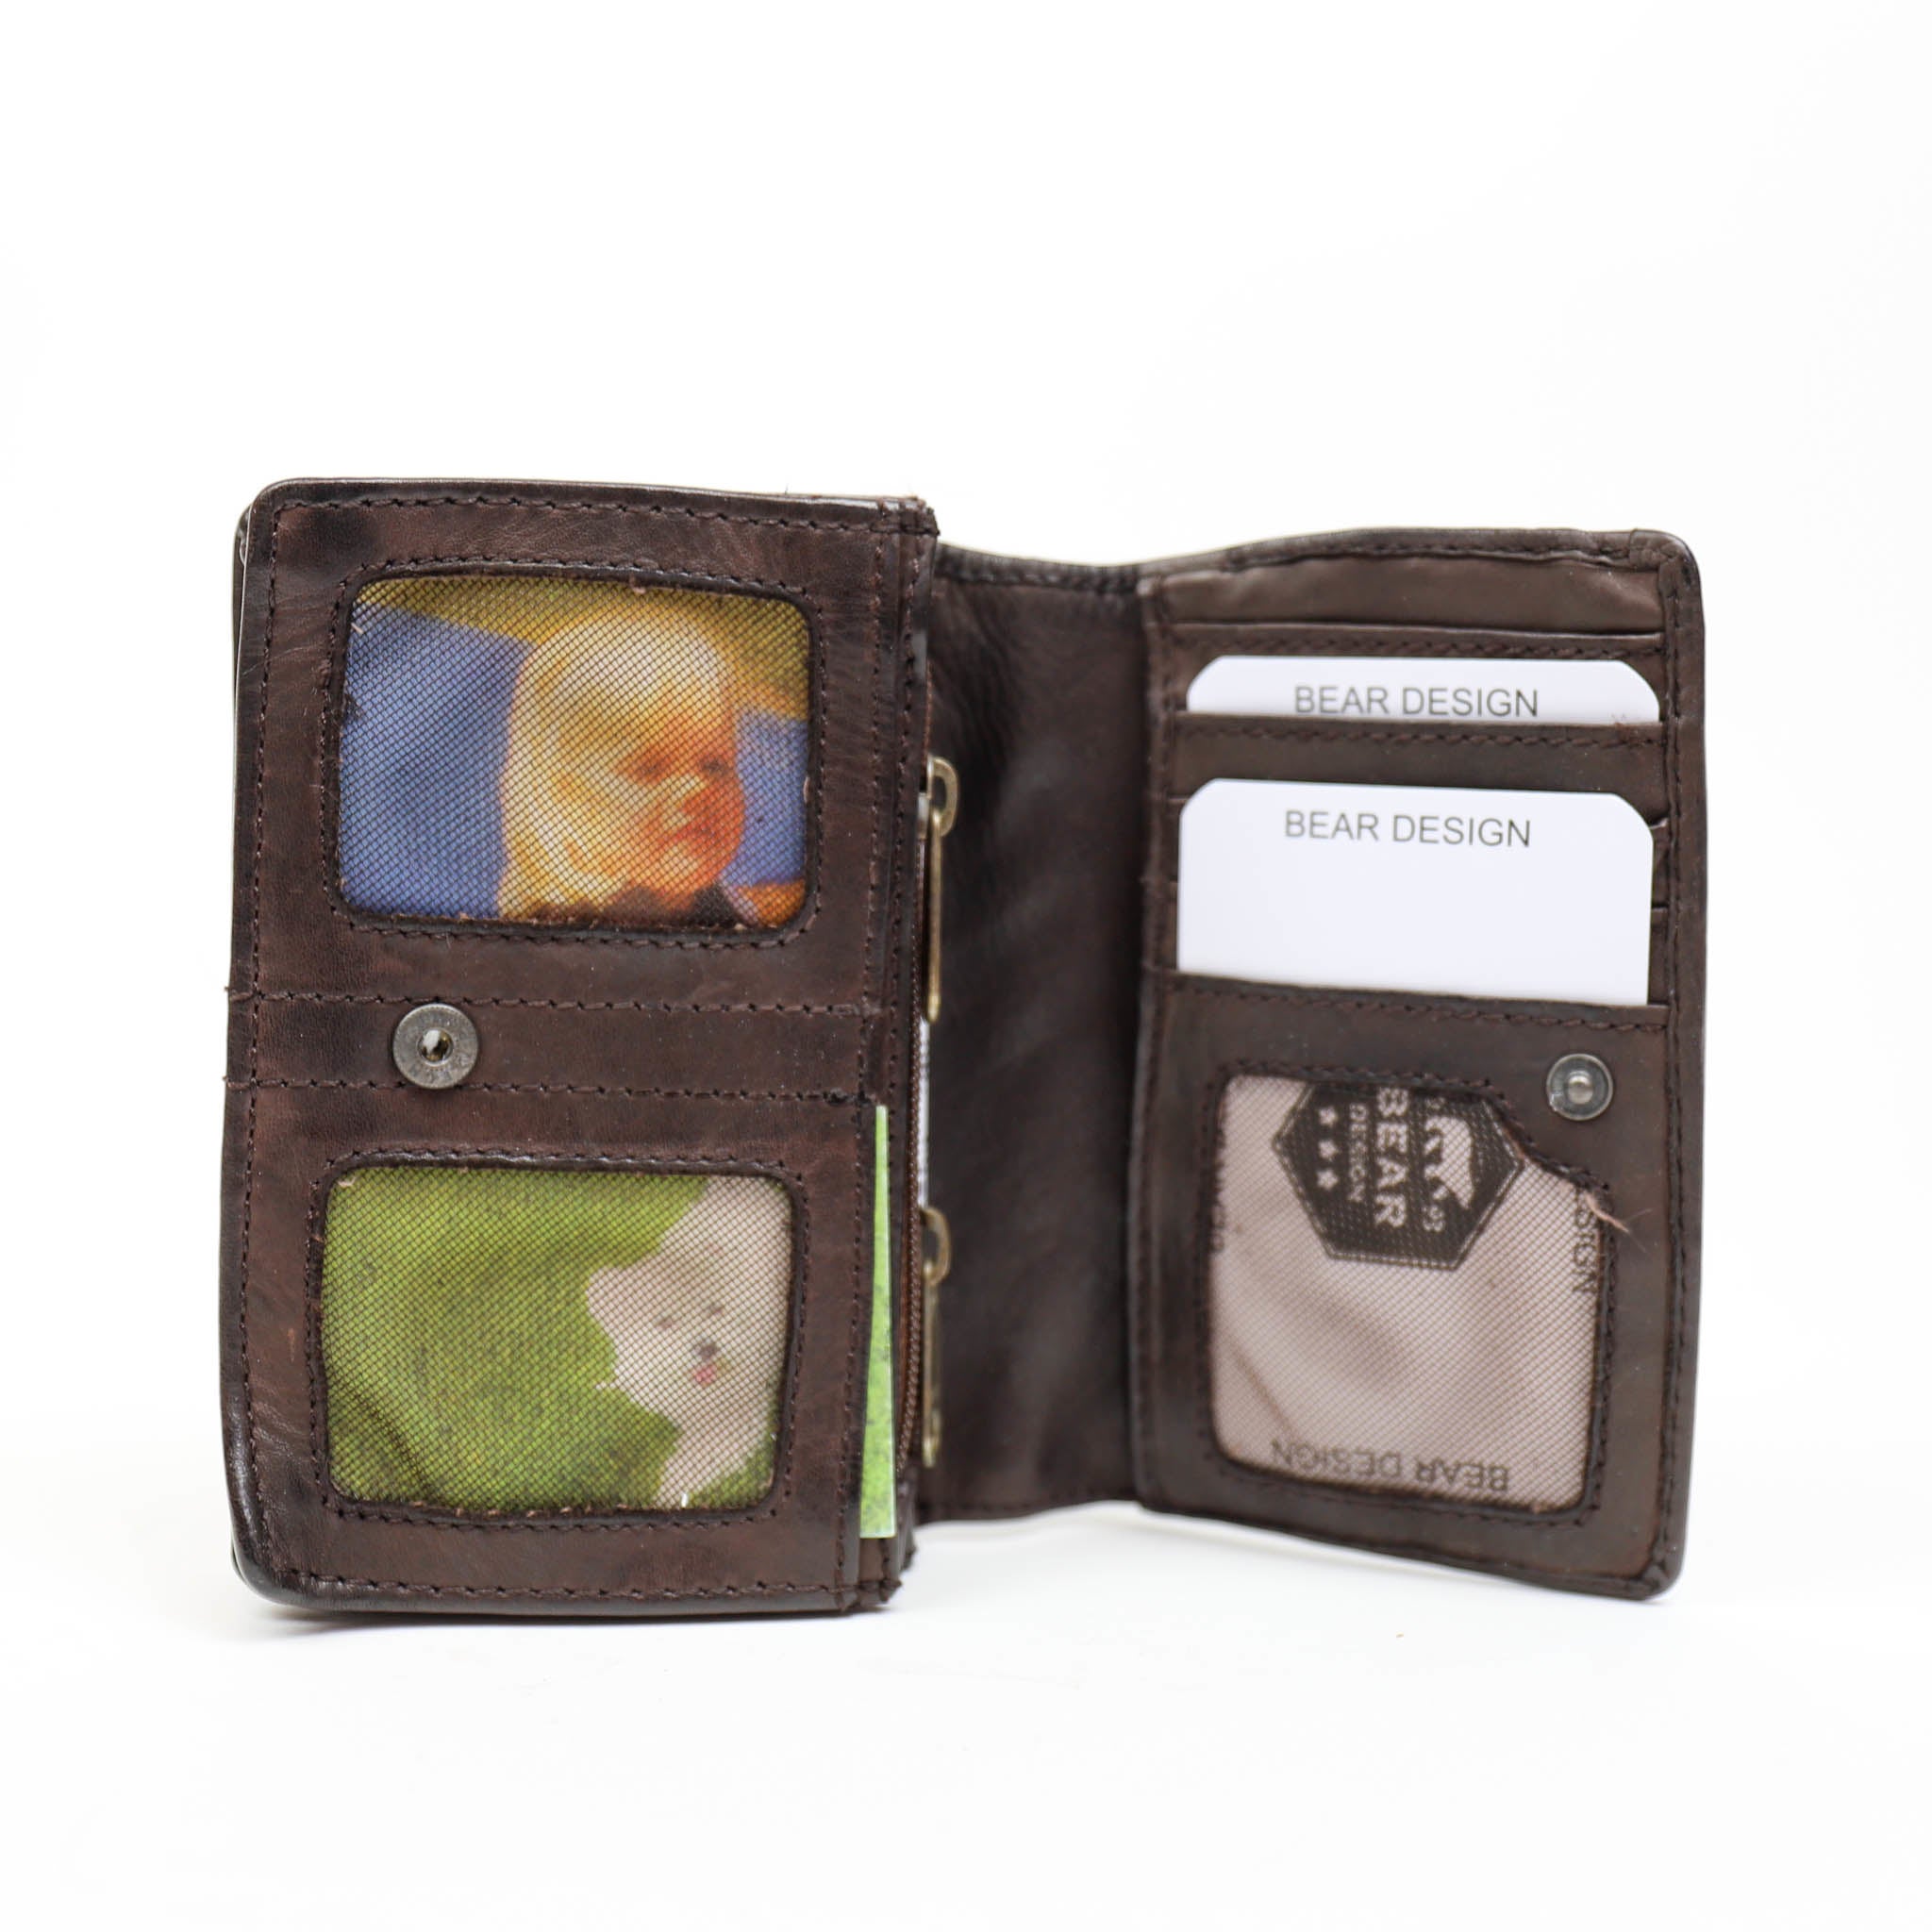 Wrap wallet 'Nina' dark brown - CL 16212